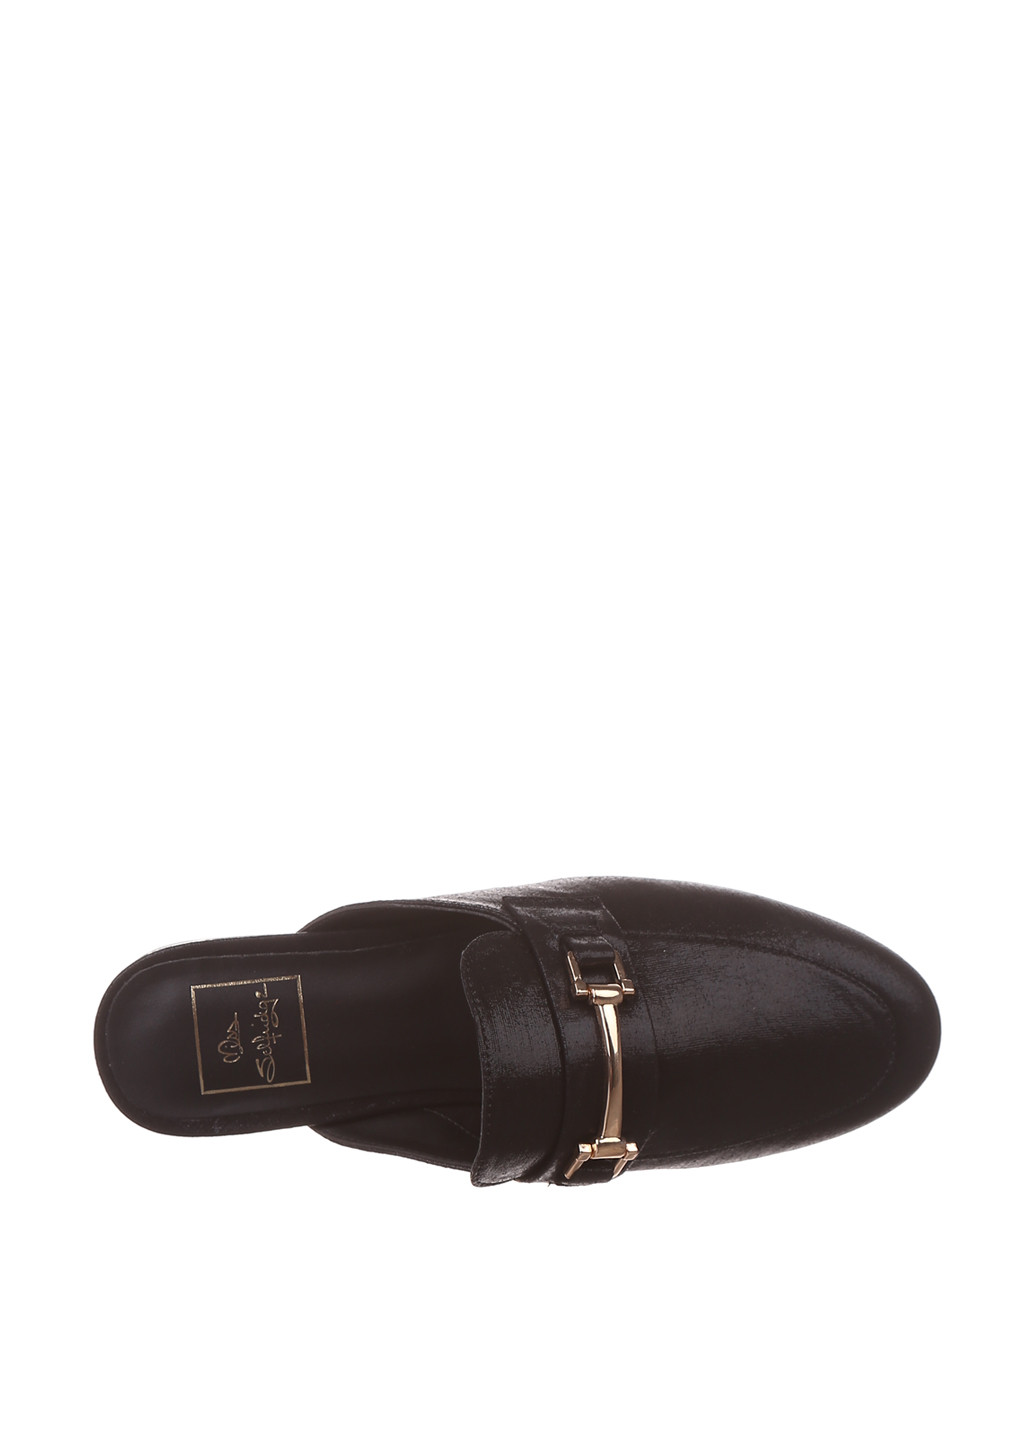 Черные мюли Miss Selfridge с металлическими вставками на низком каблуке